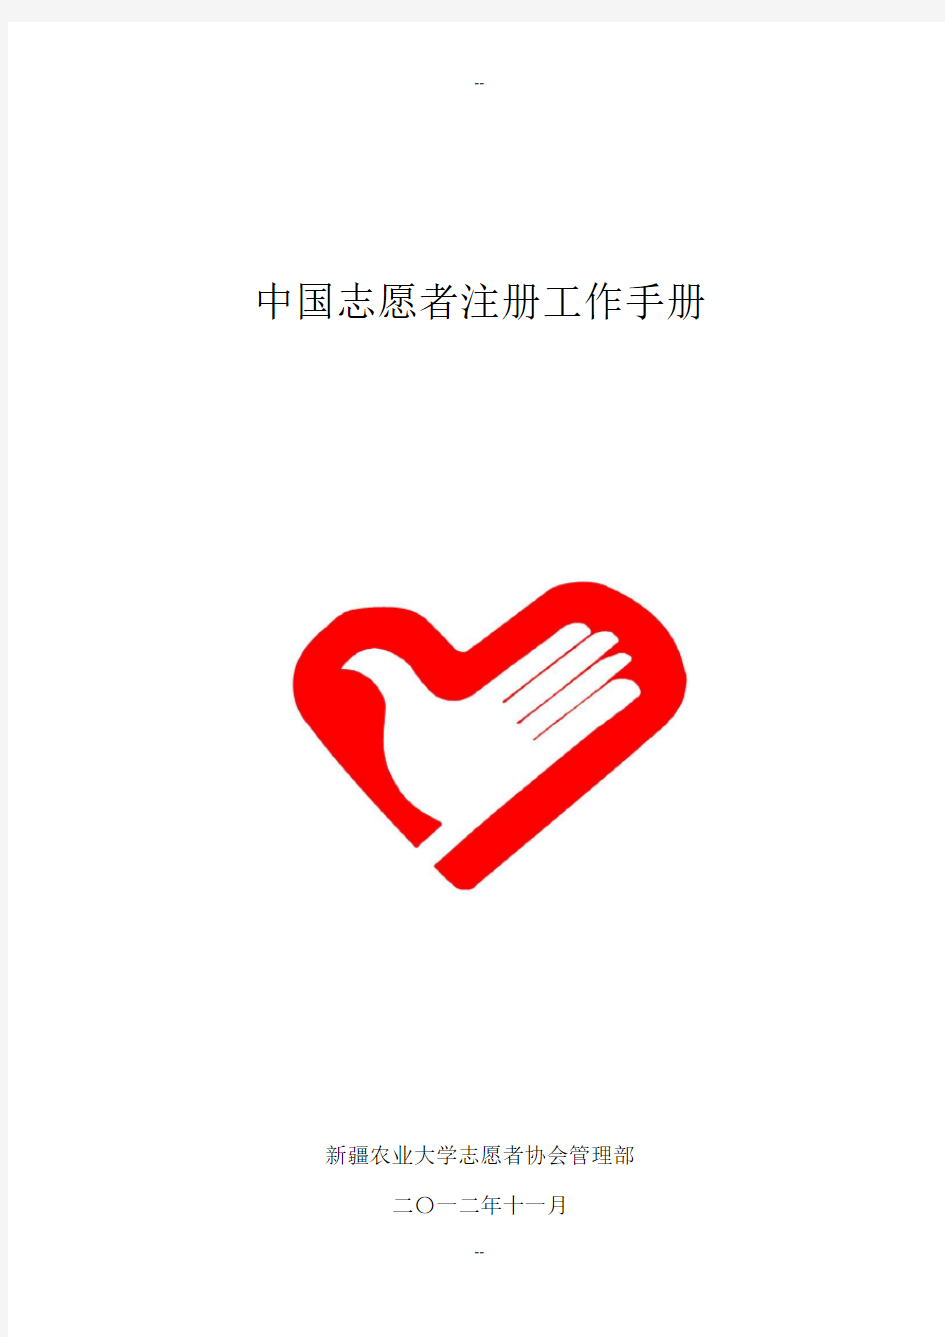 中国志愿者注册工作手册